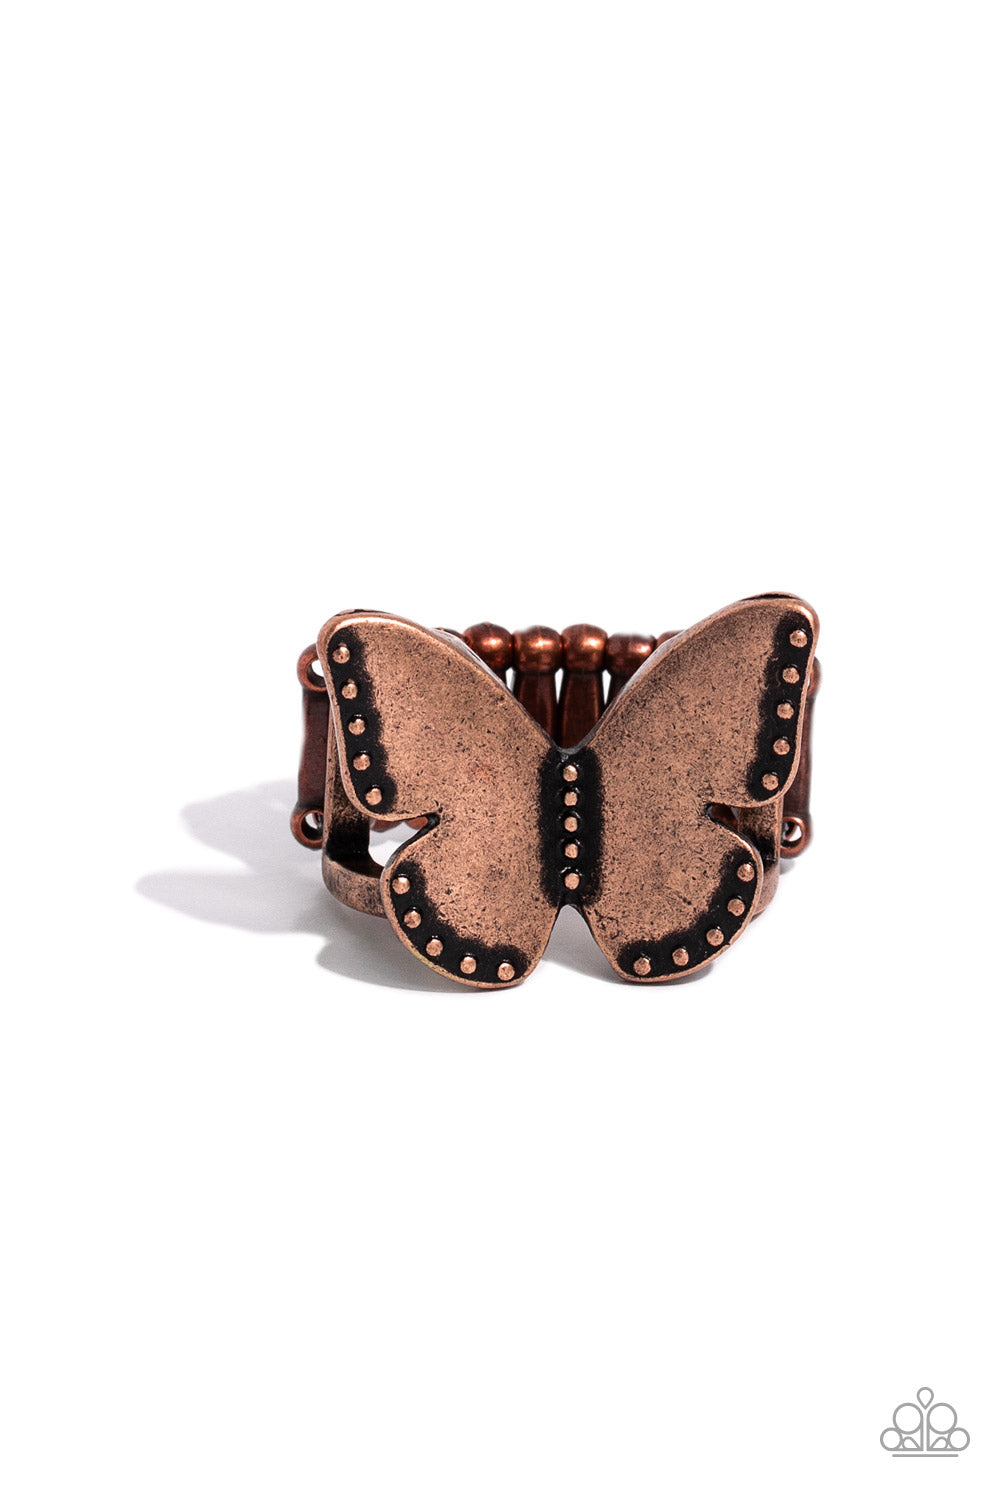 Soaring Santa Fe - Copper Ring - Paparazzi - Dare2bdazzlin N Jewelry